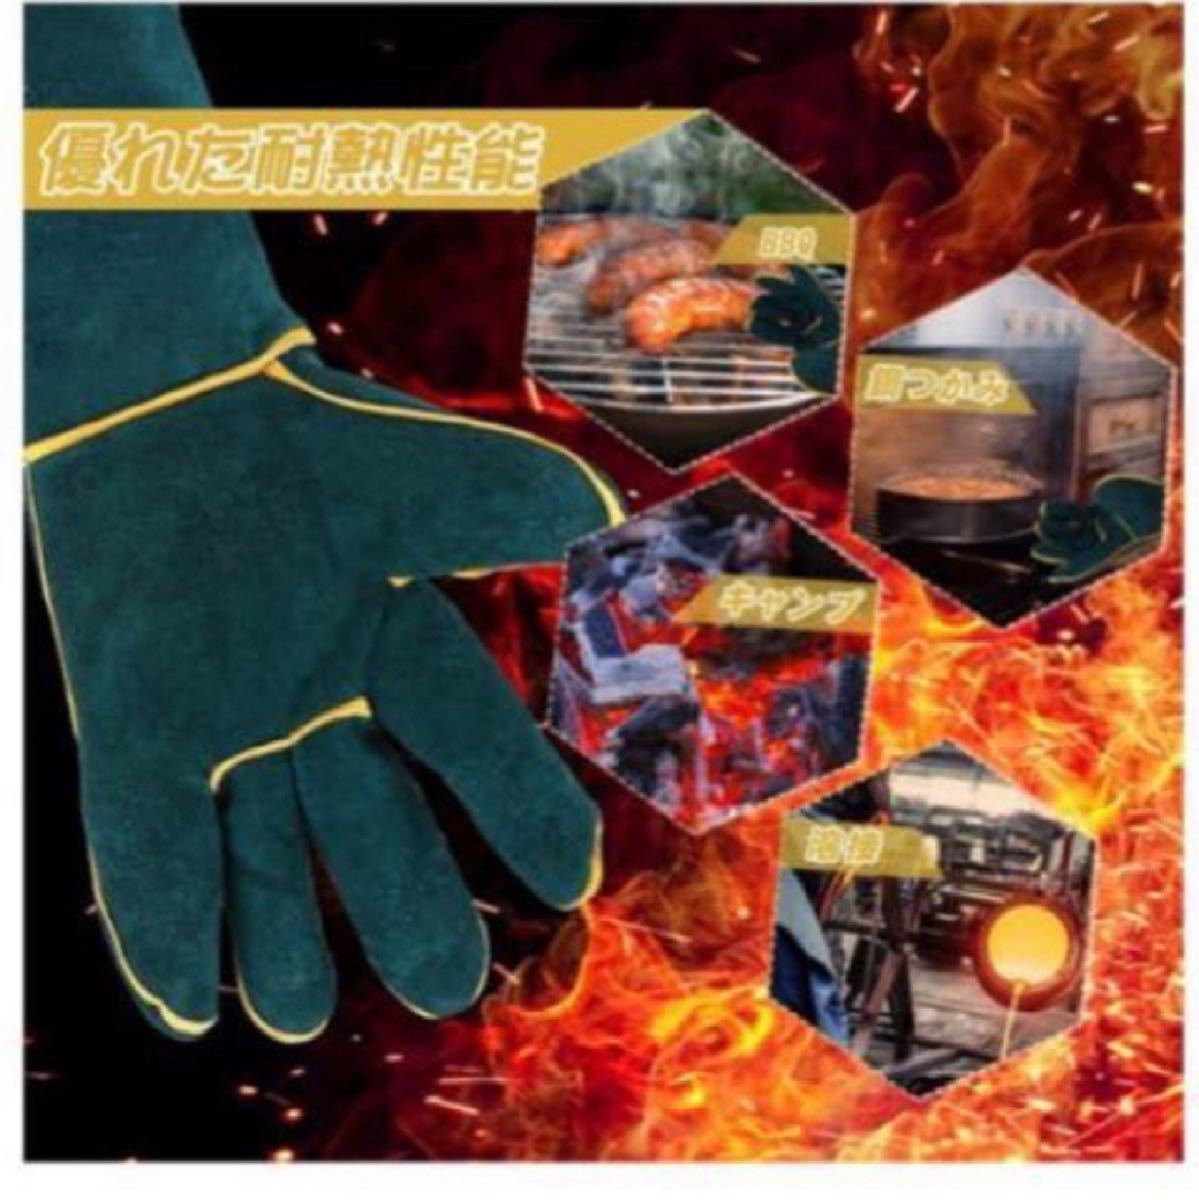 バーベキュー 耐熱グローブ 耐熱 手袋 キャンプグローブ 耐火グローブ 作業用アウトドア用革手袋 防刃 耐火耐熱 